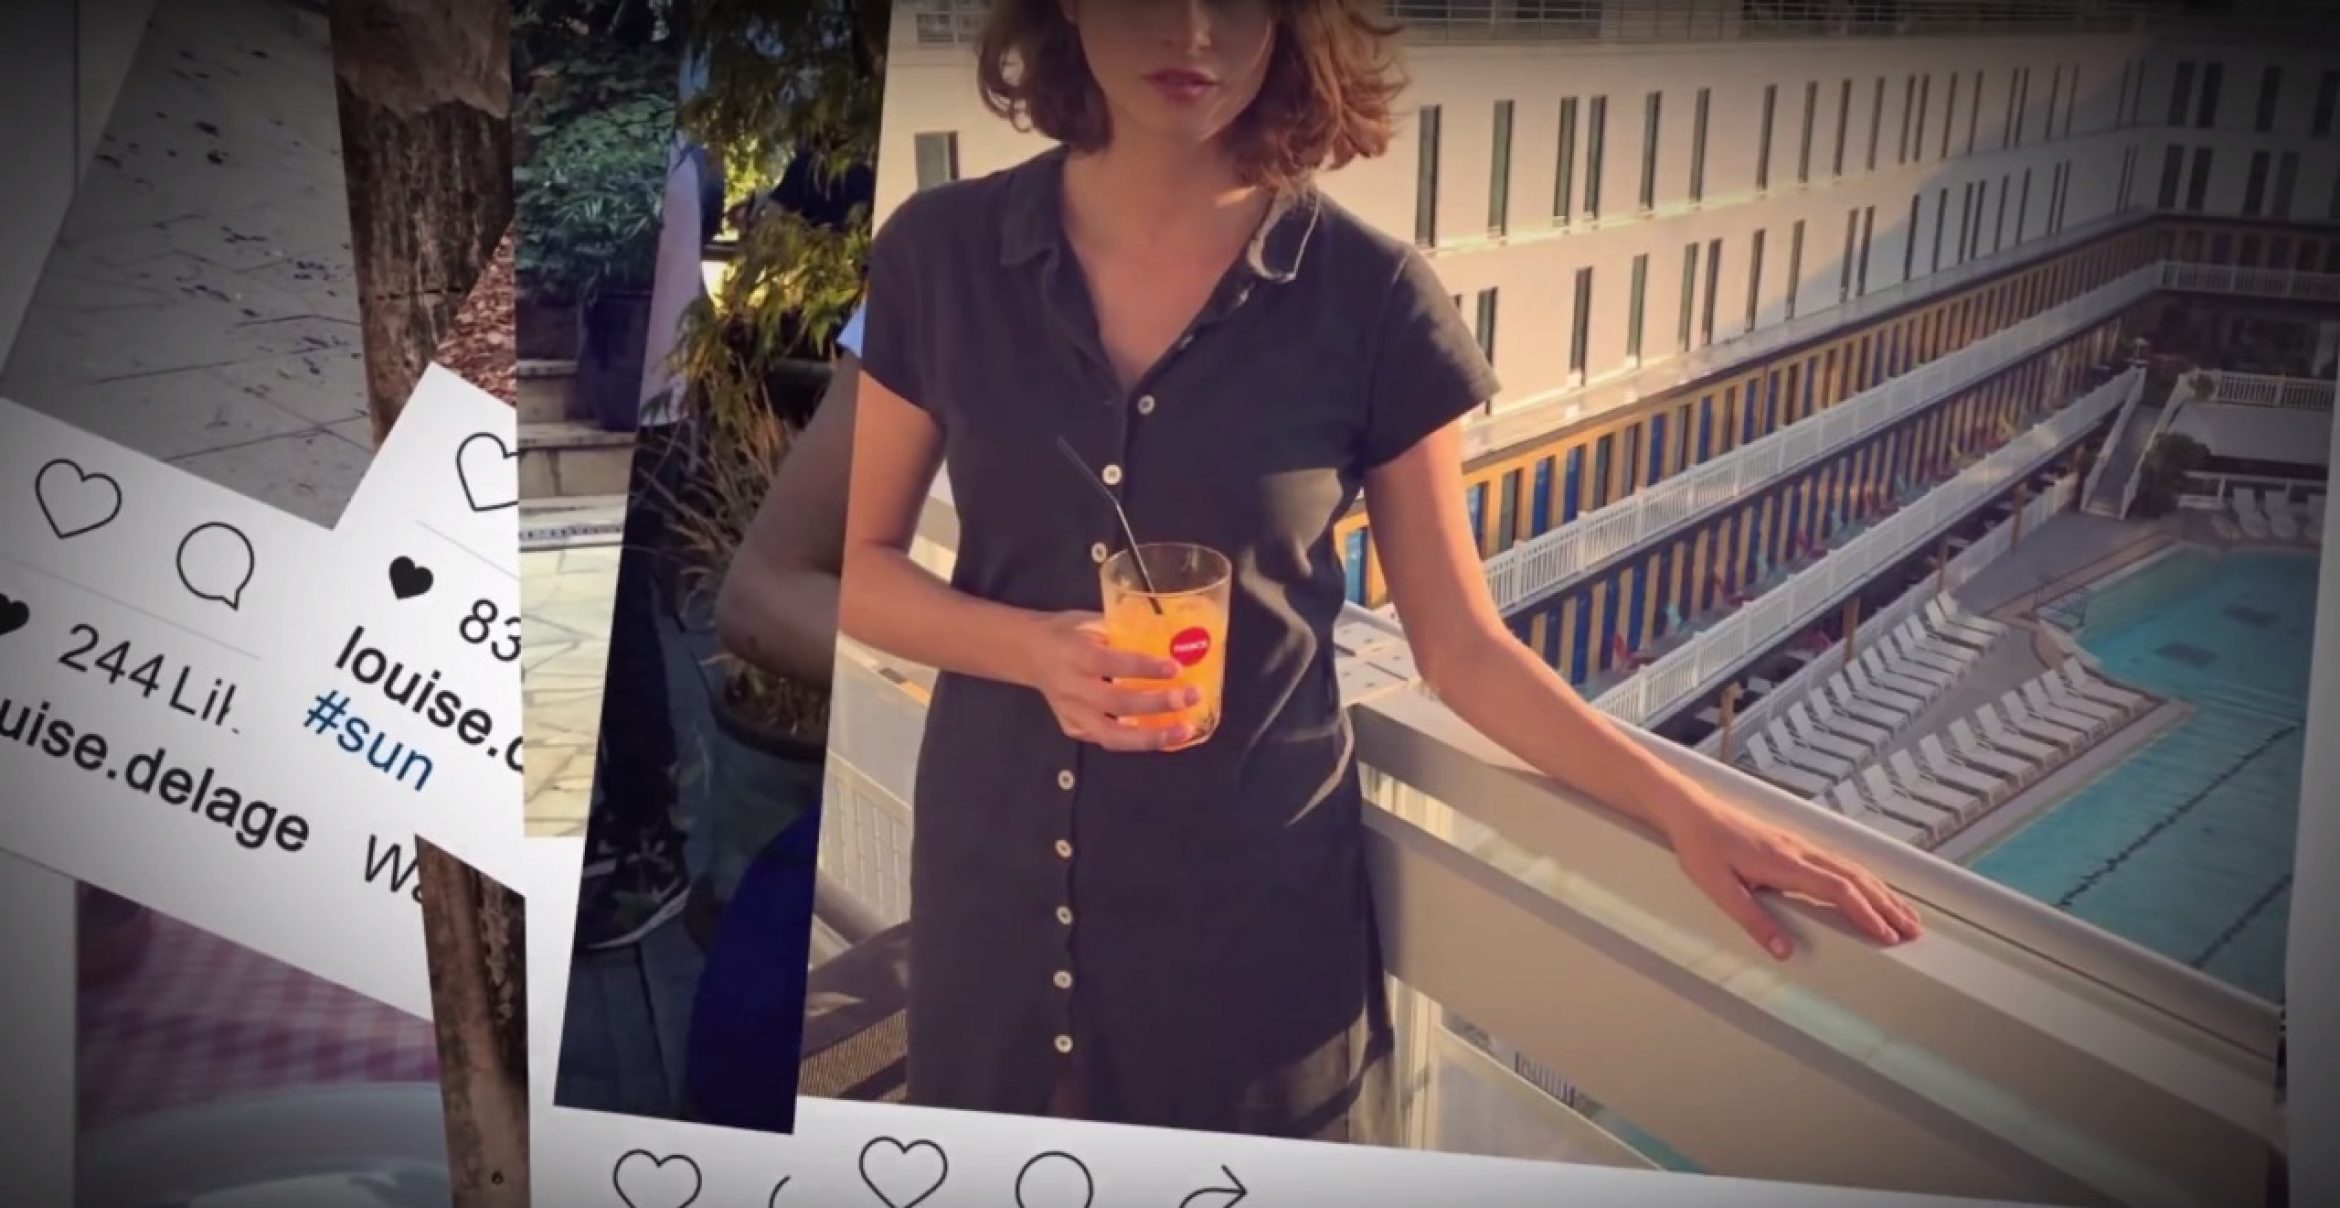 Clevere Kampagne: Addict Aide inszeniert Instagram-Star mit versteckter Botschaft